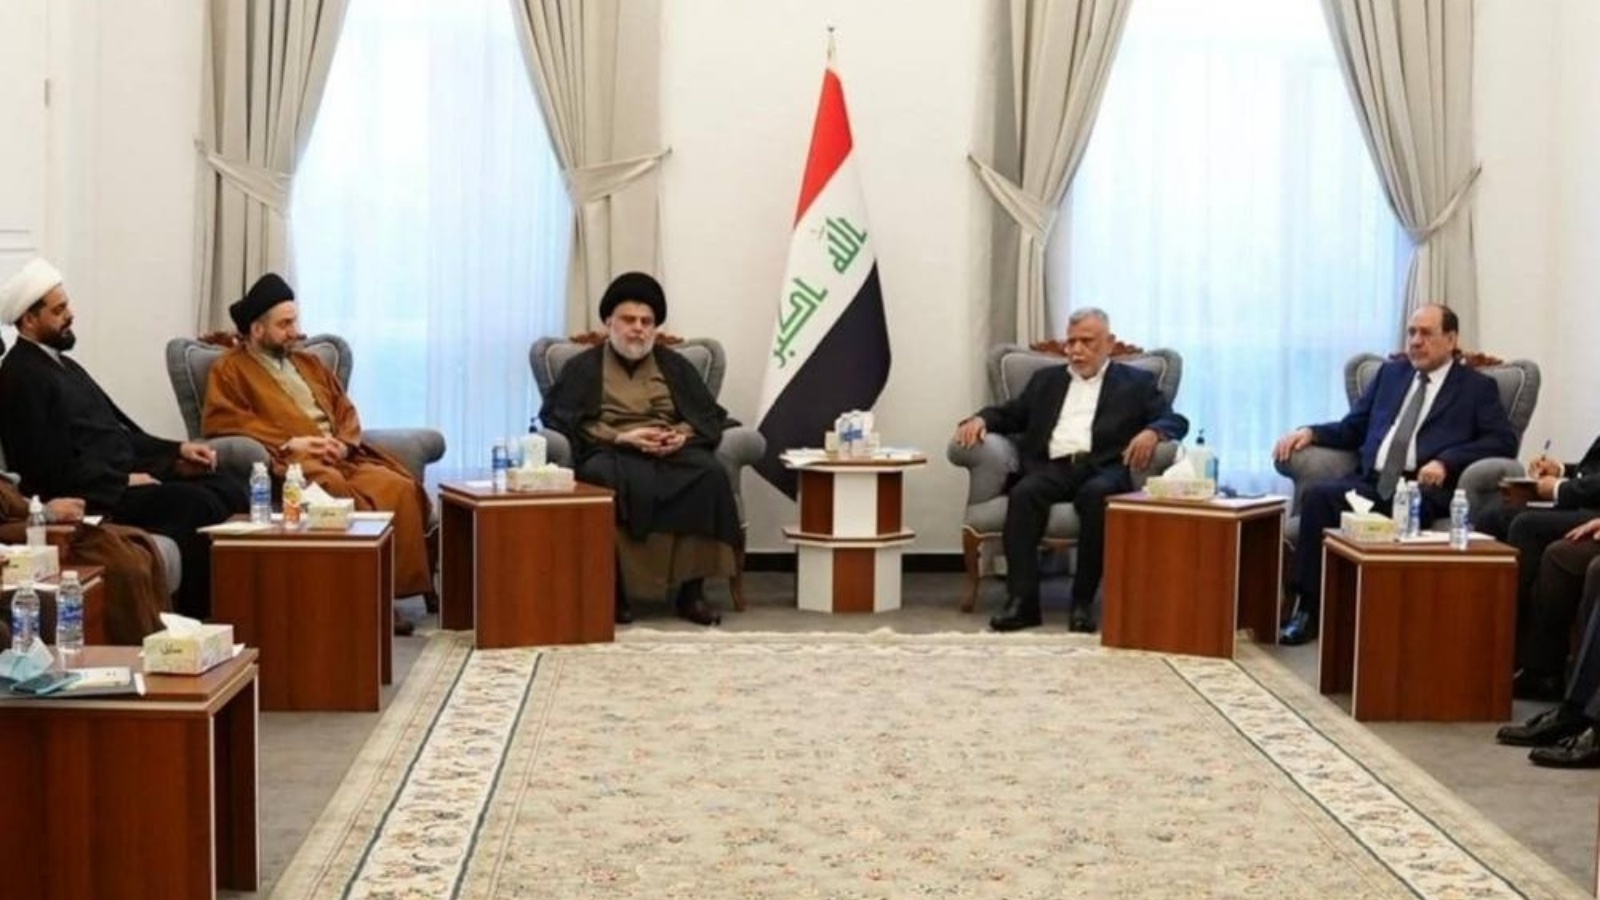 قادة الإطار الشيعي العراقي خلال اجتماعهم الأول مع الصدر في بغداد في الثاني من الشهر الحالي (تويتر)